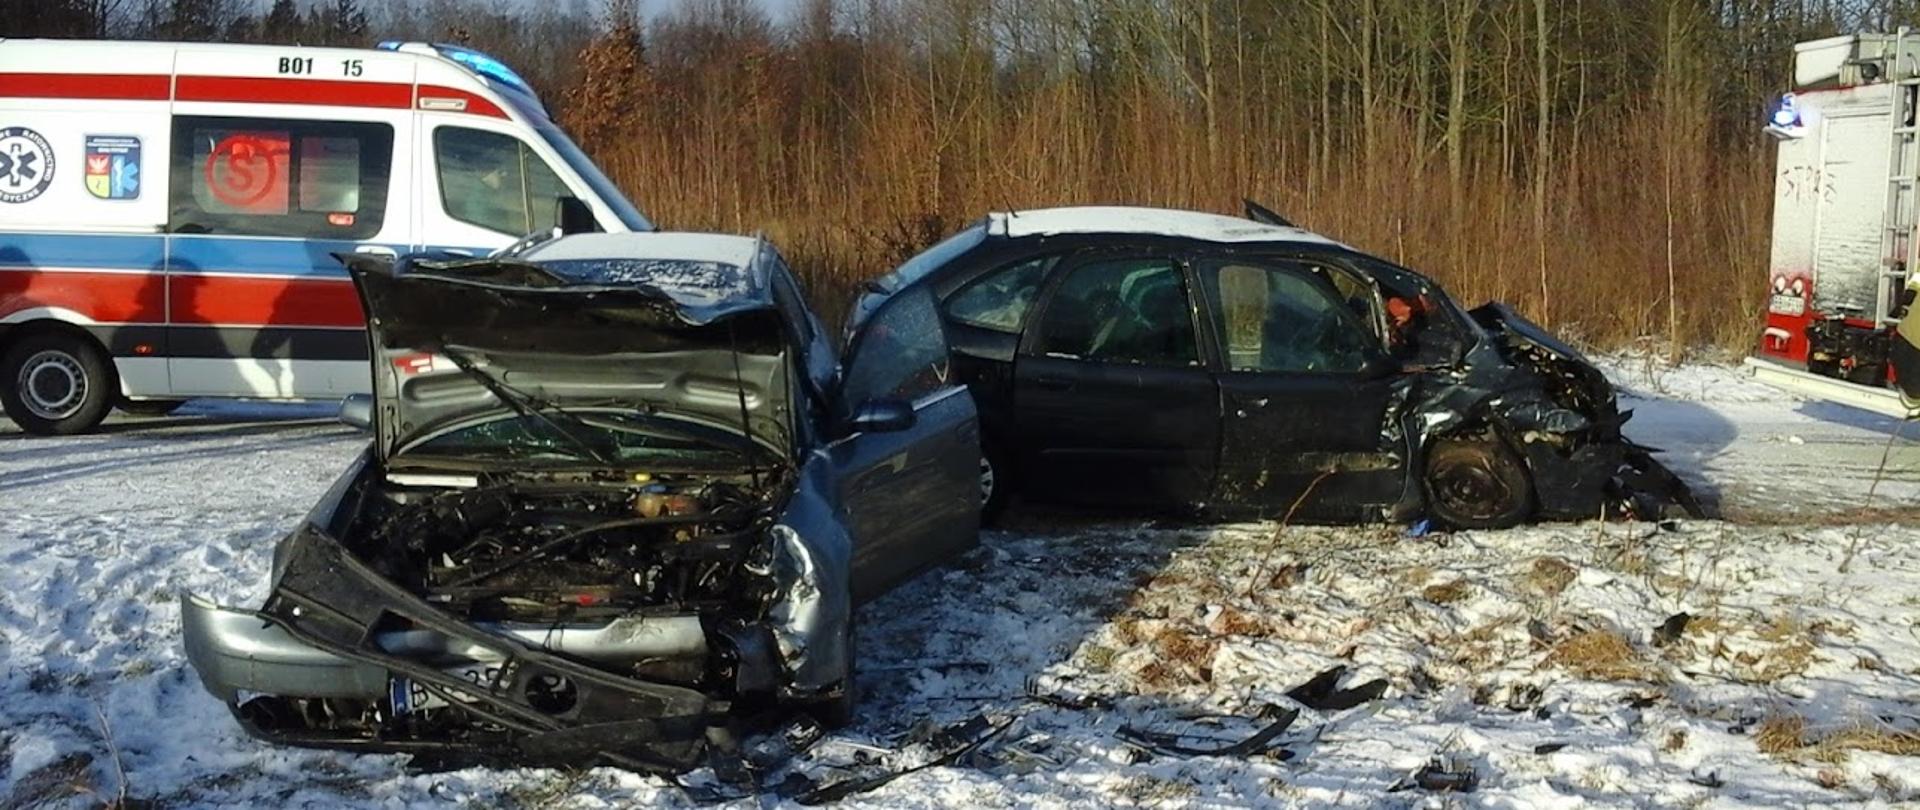 Zdjęcie przedstawia rozbite samochody osobowe na śniegu po uderzeniu czołowym, w tle widać karetkę pogotowia ratunkowego